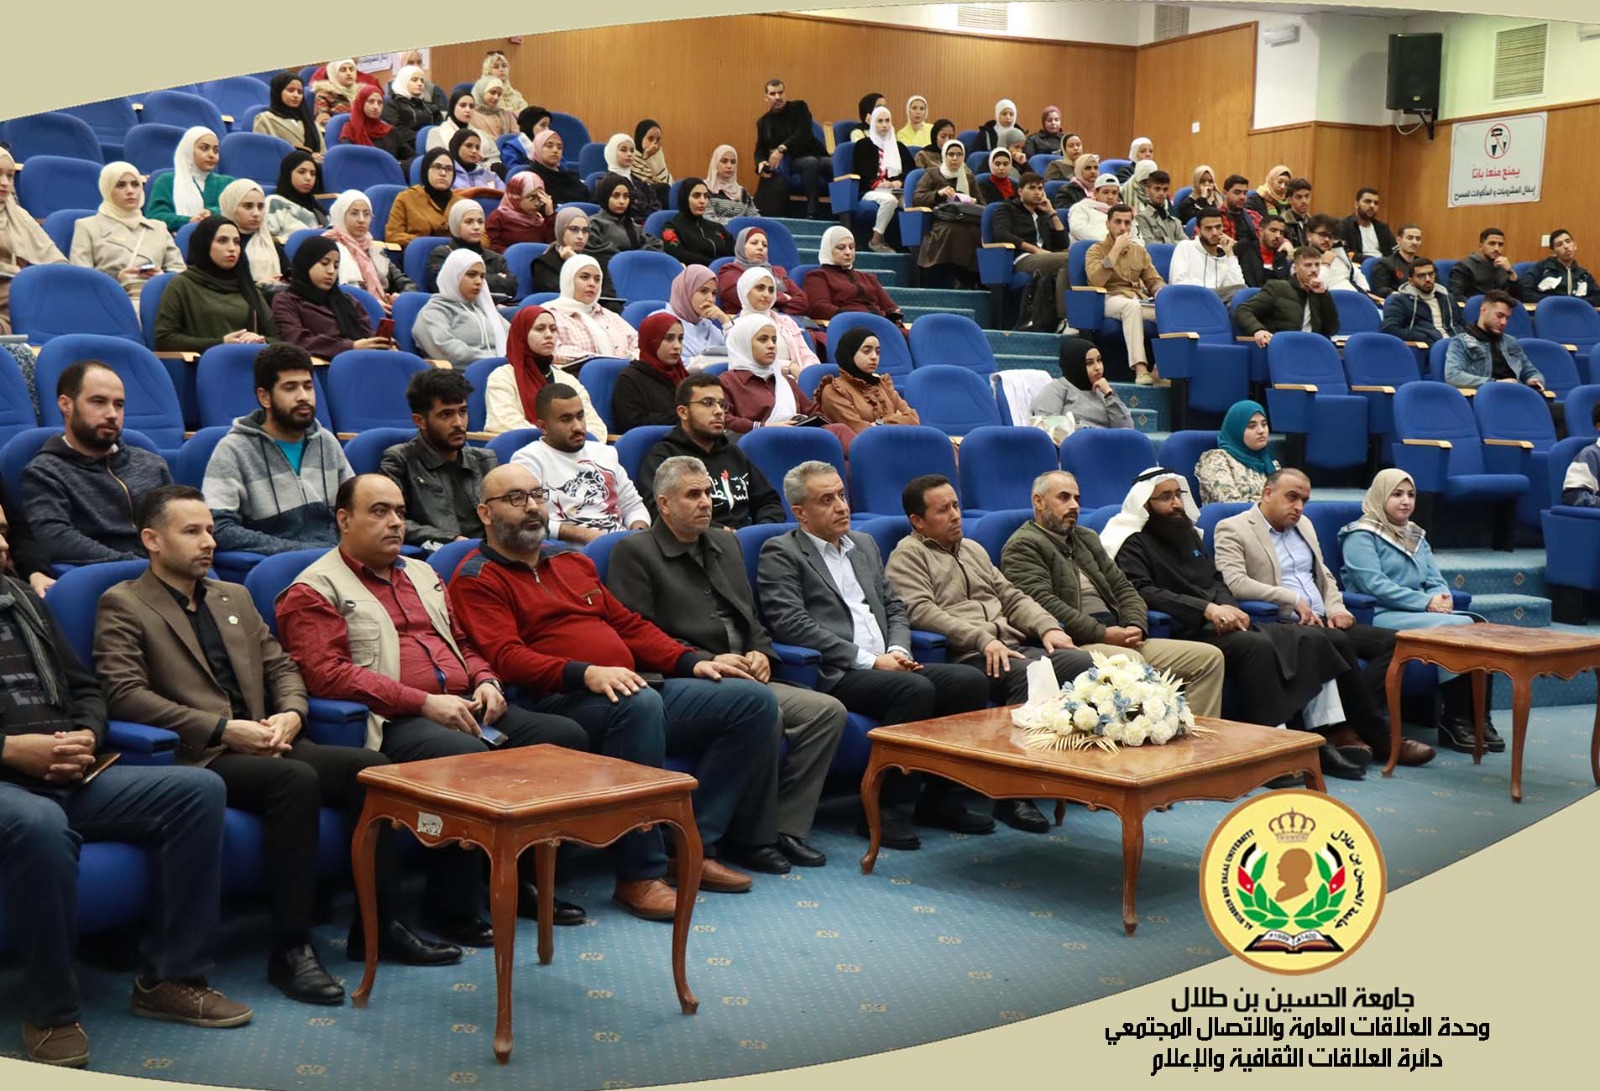 ندوة اعلامية بعنوان (السردية التوراتية واختلاق التاريخ) في جامعة الحسين بن طلال